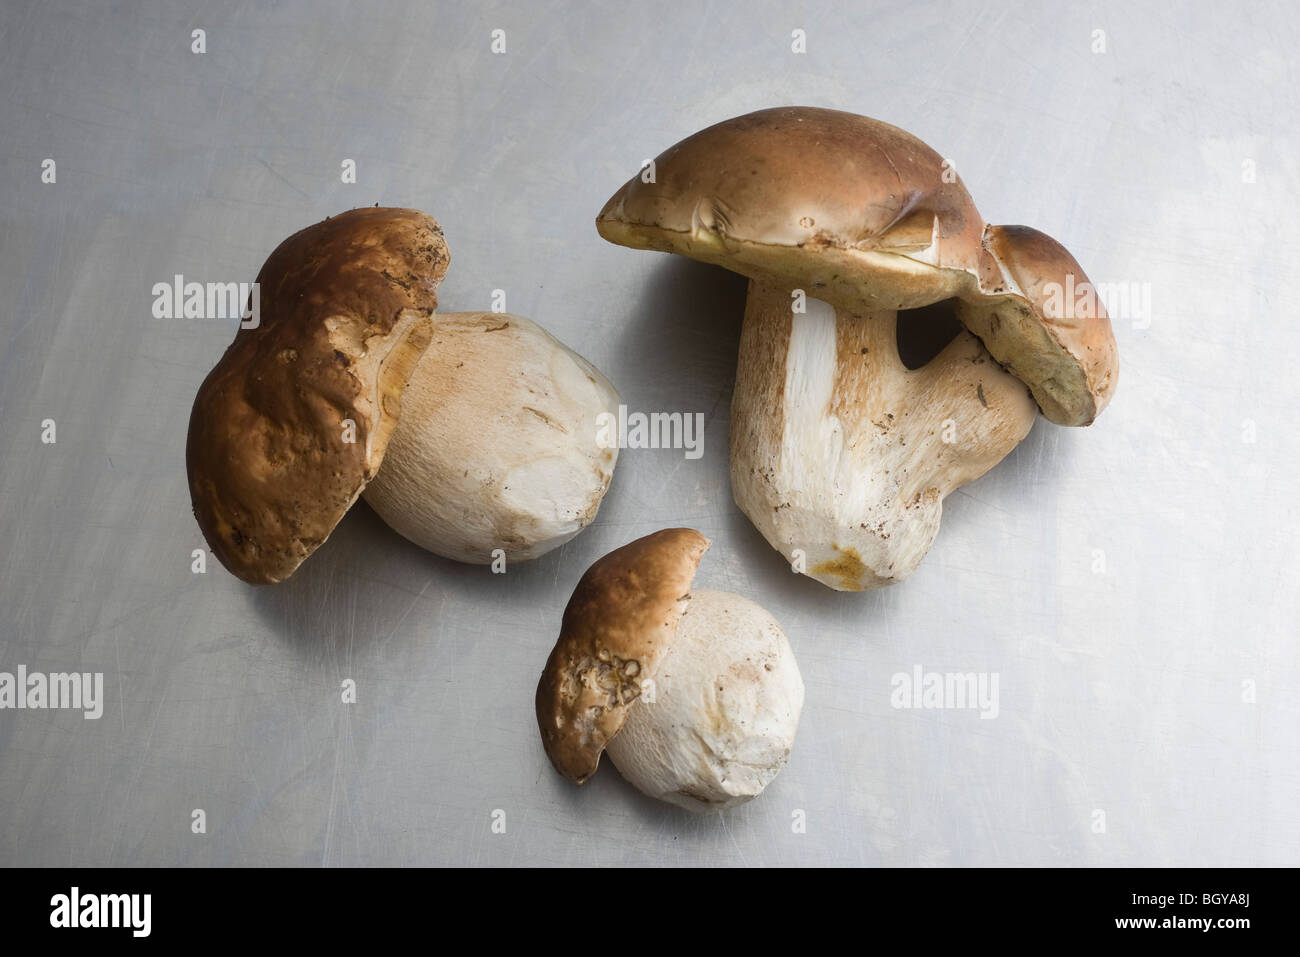 Cep or Porcini mushrooms (Boletus edulis) Stock Photo